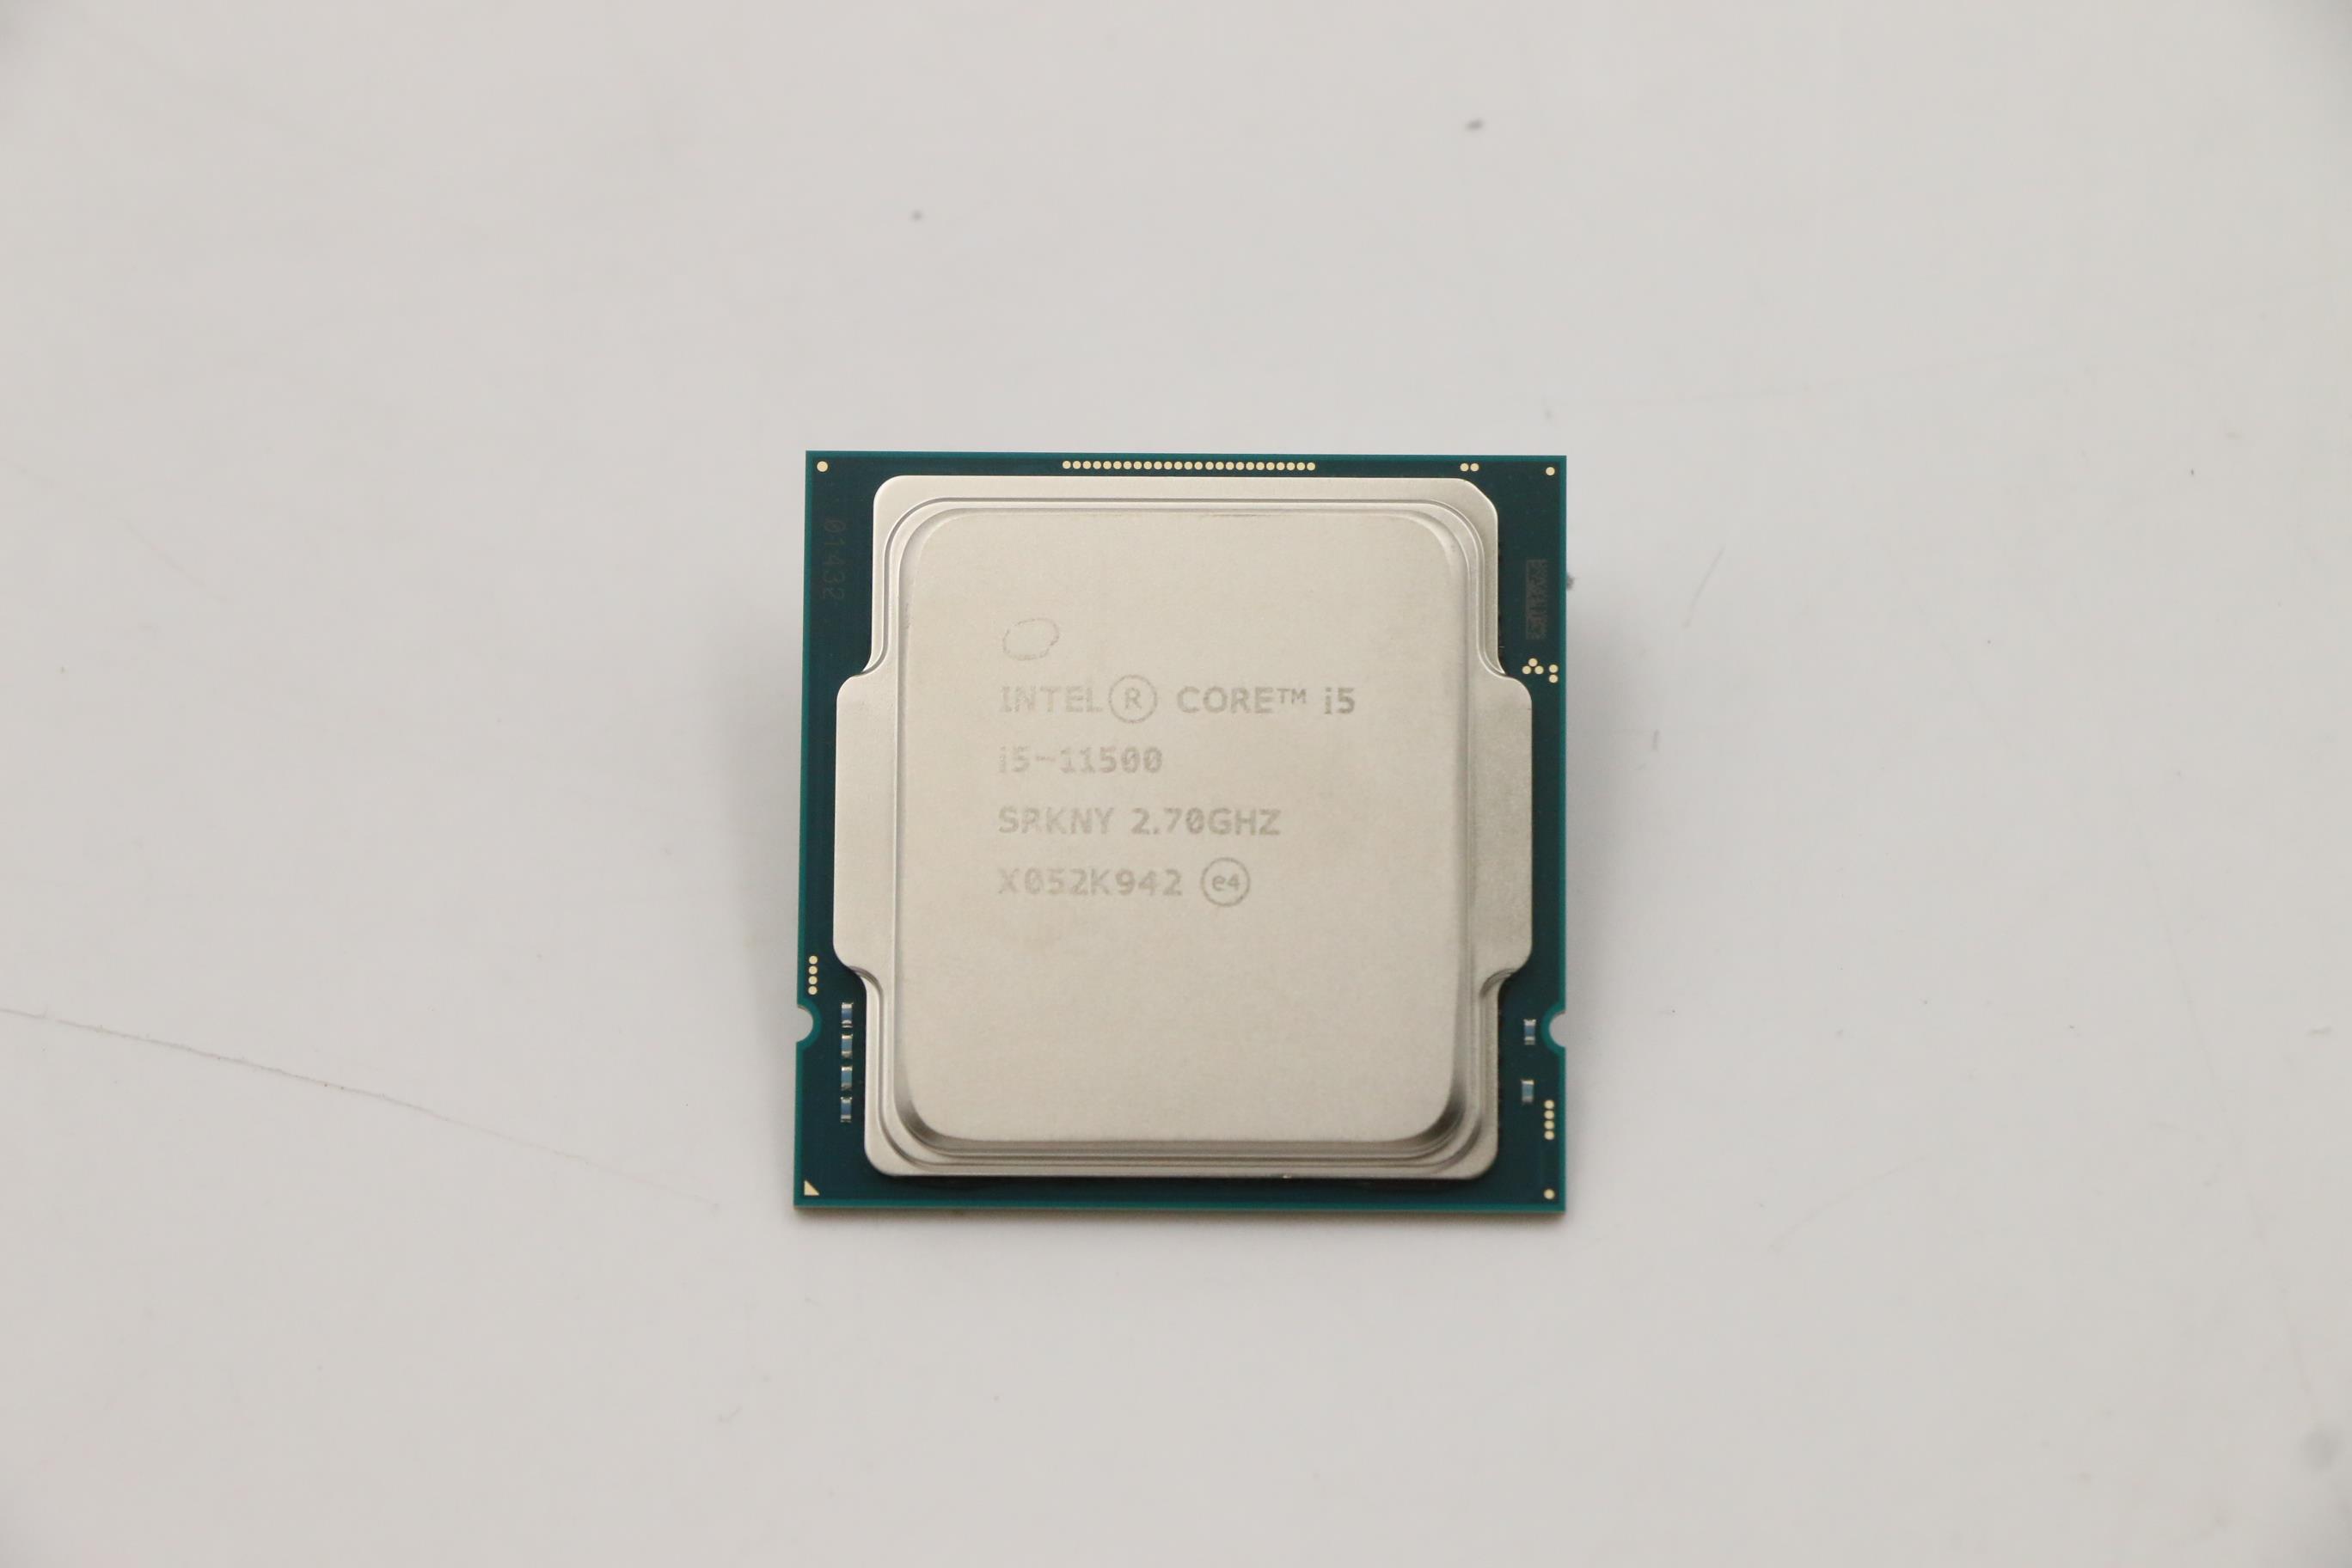 Lenovo Part  Original Lenovo Intel i5-11500 2.7GHz/6C/12M 65W DDR4 3200